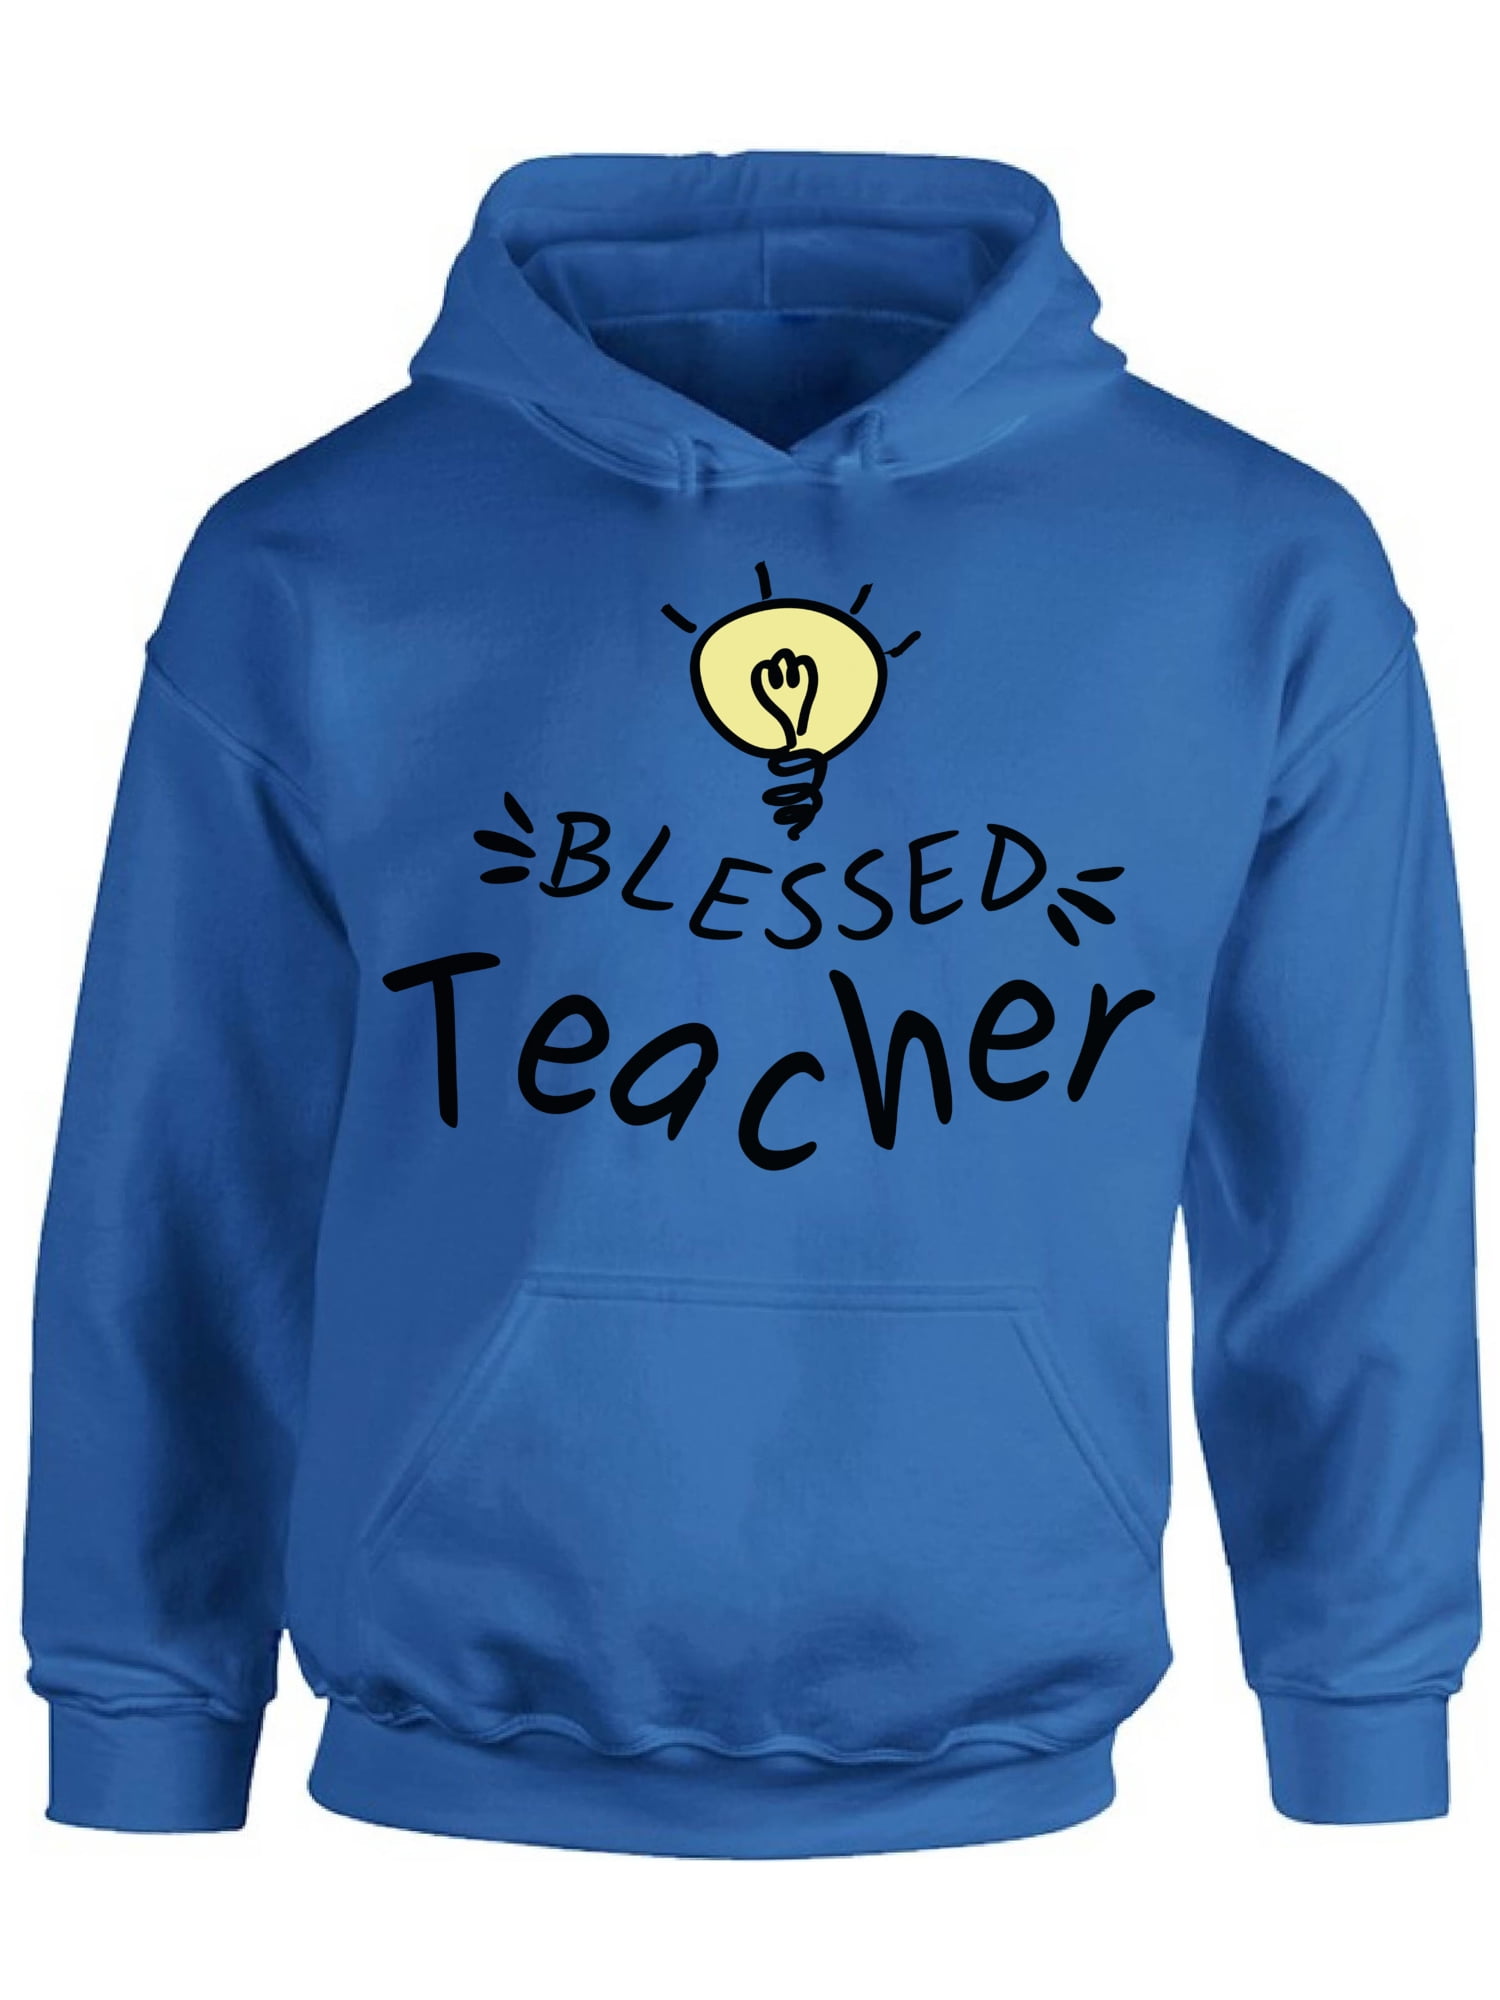 Back to School Teacher Hoodie Blessed Teacher Sweatshirt for Men School ...